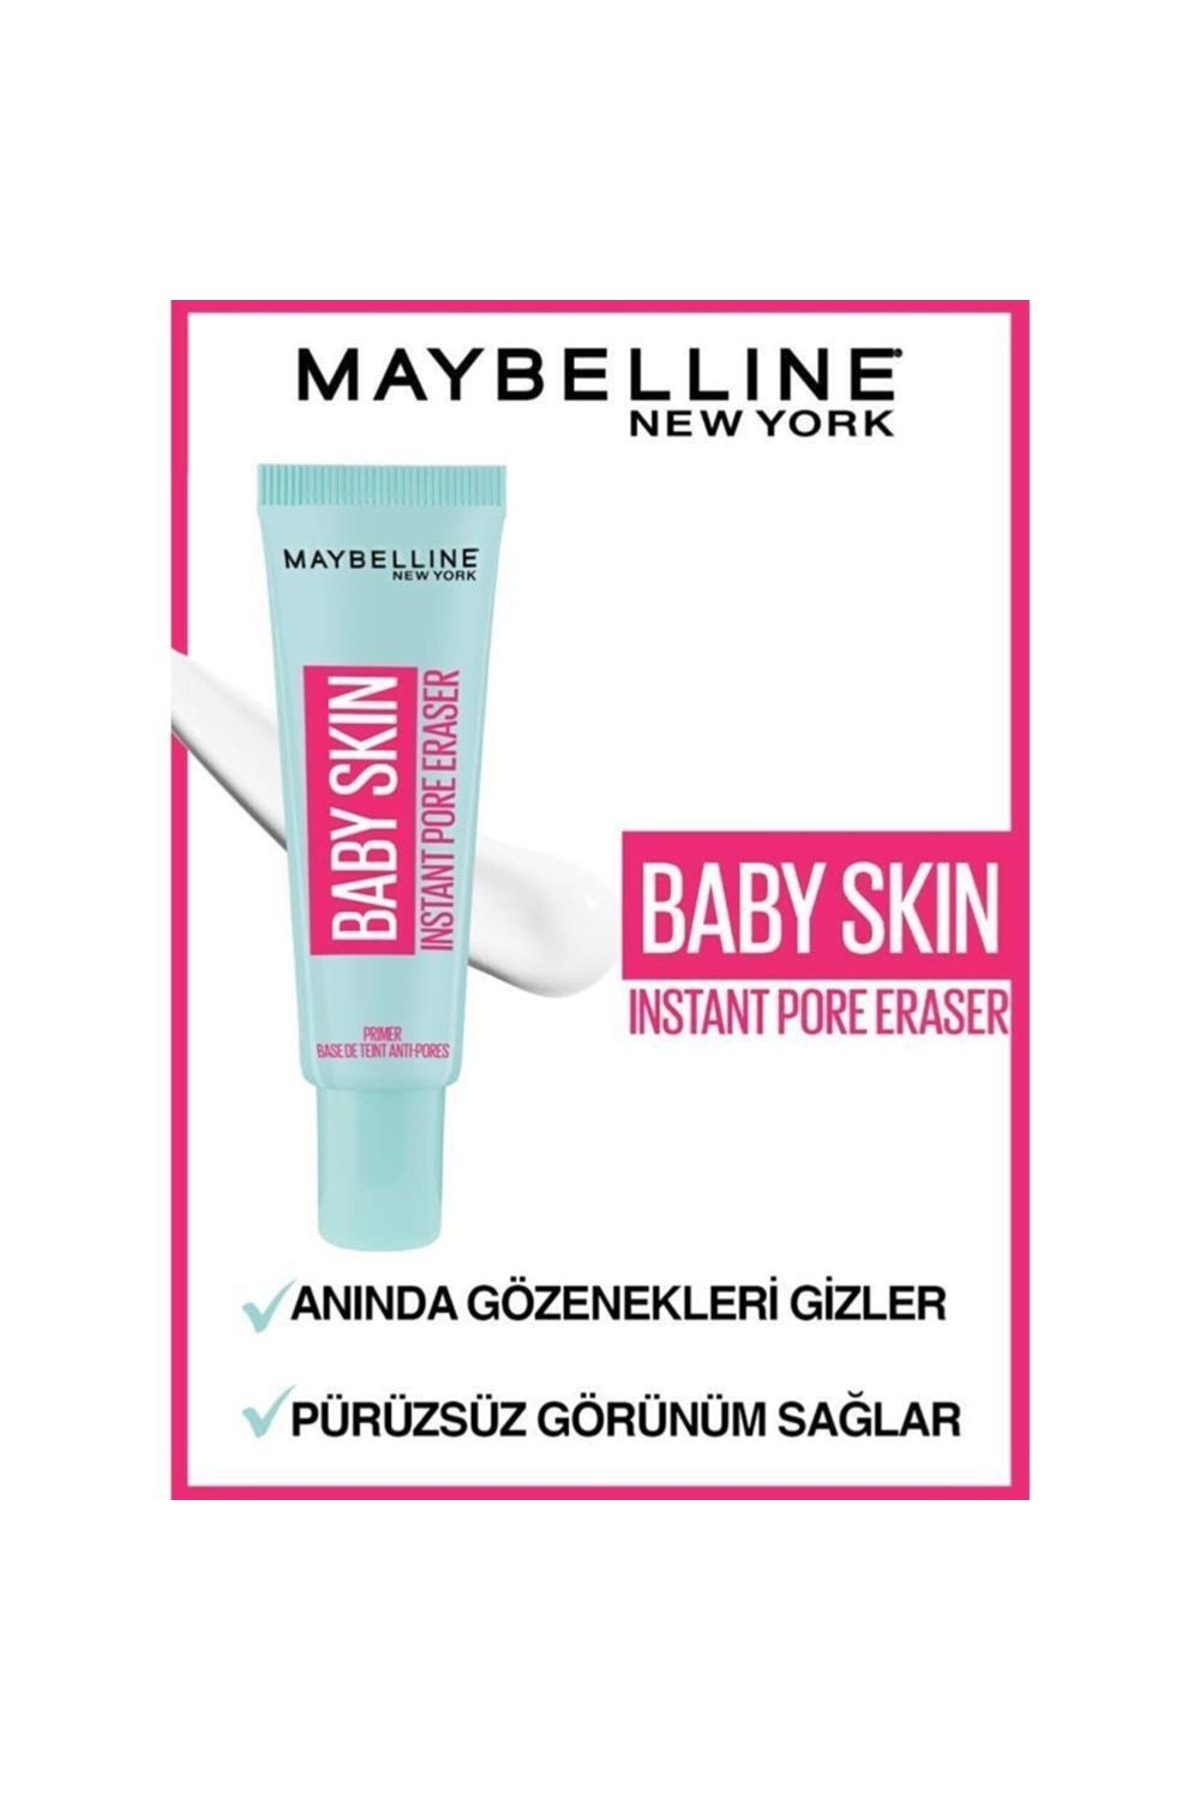 Maybelline New York Baby Skin Gözenek Gizleyici Makyaj Bazı